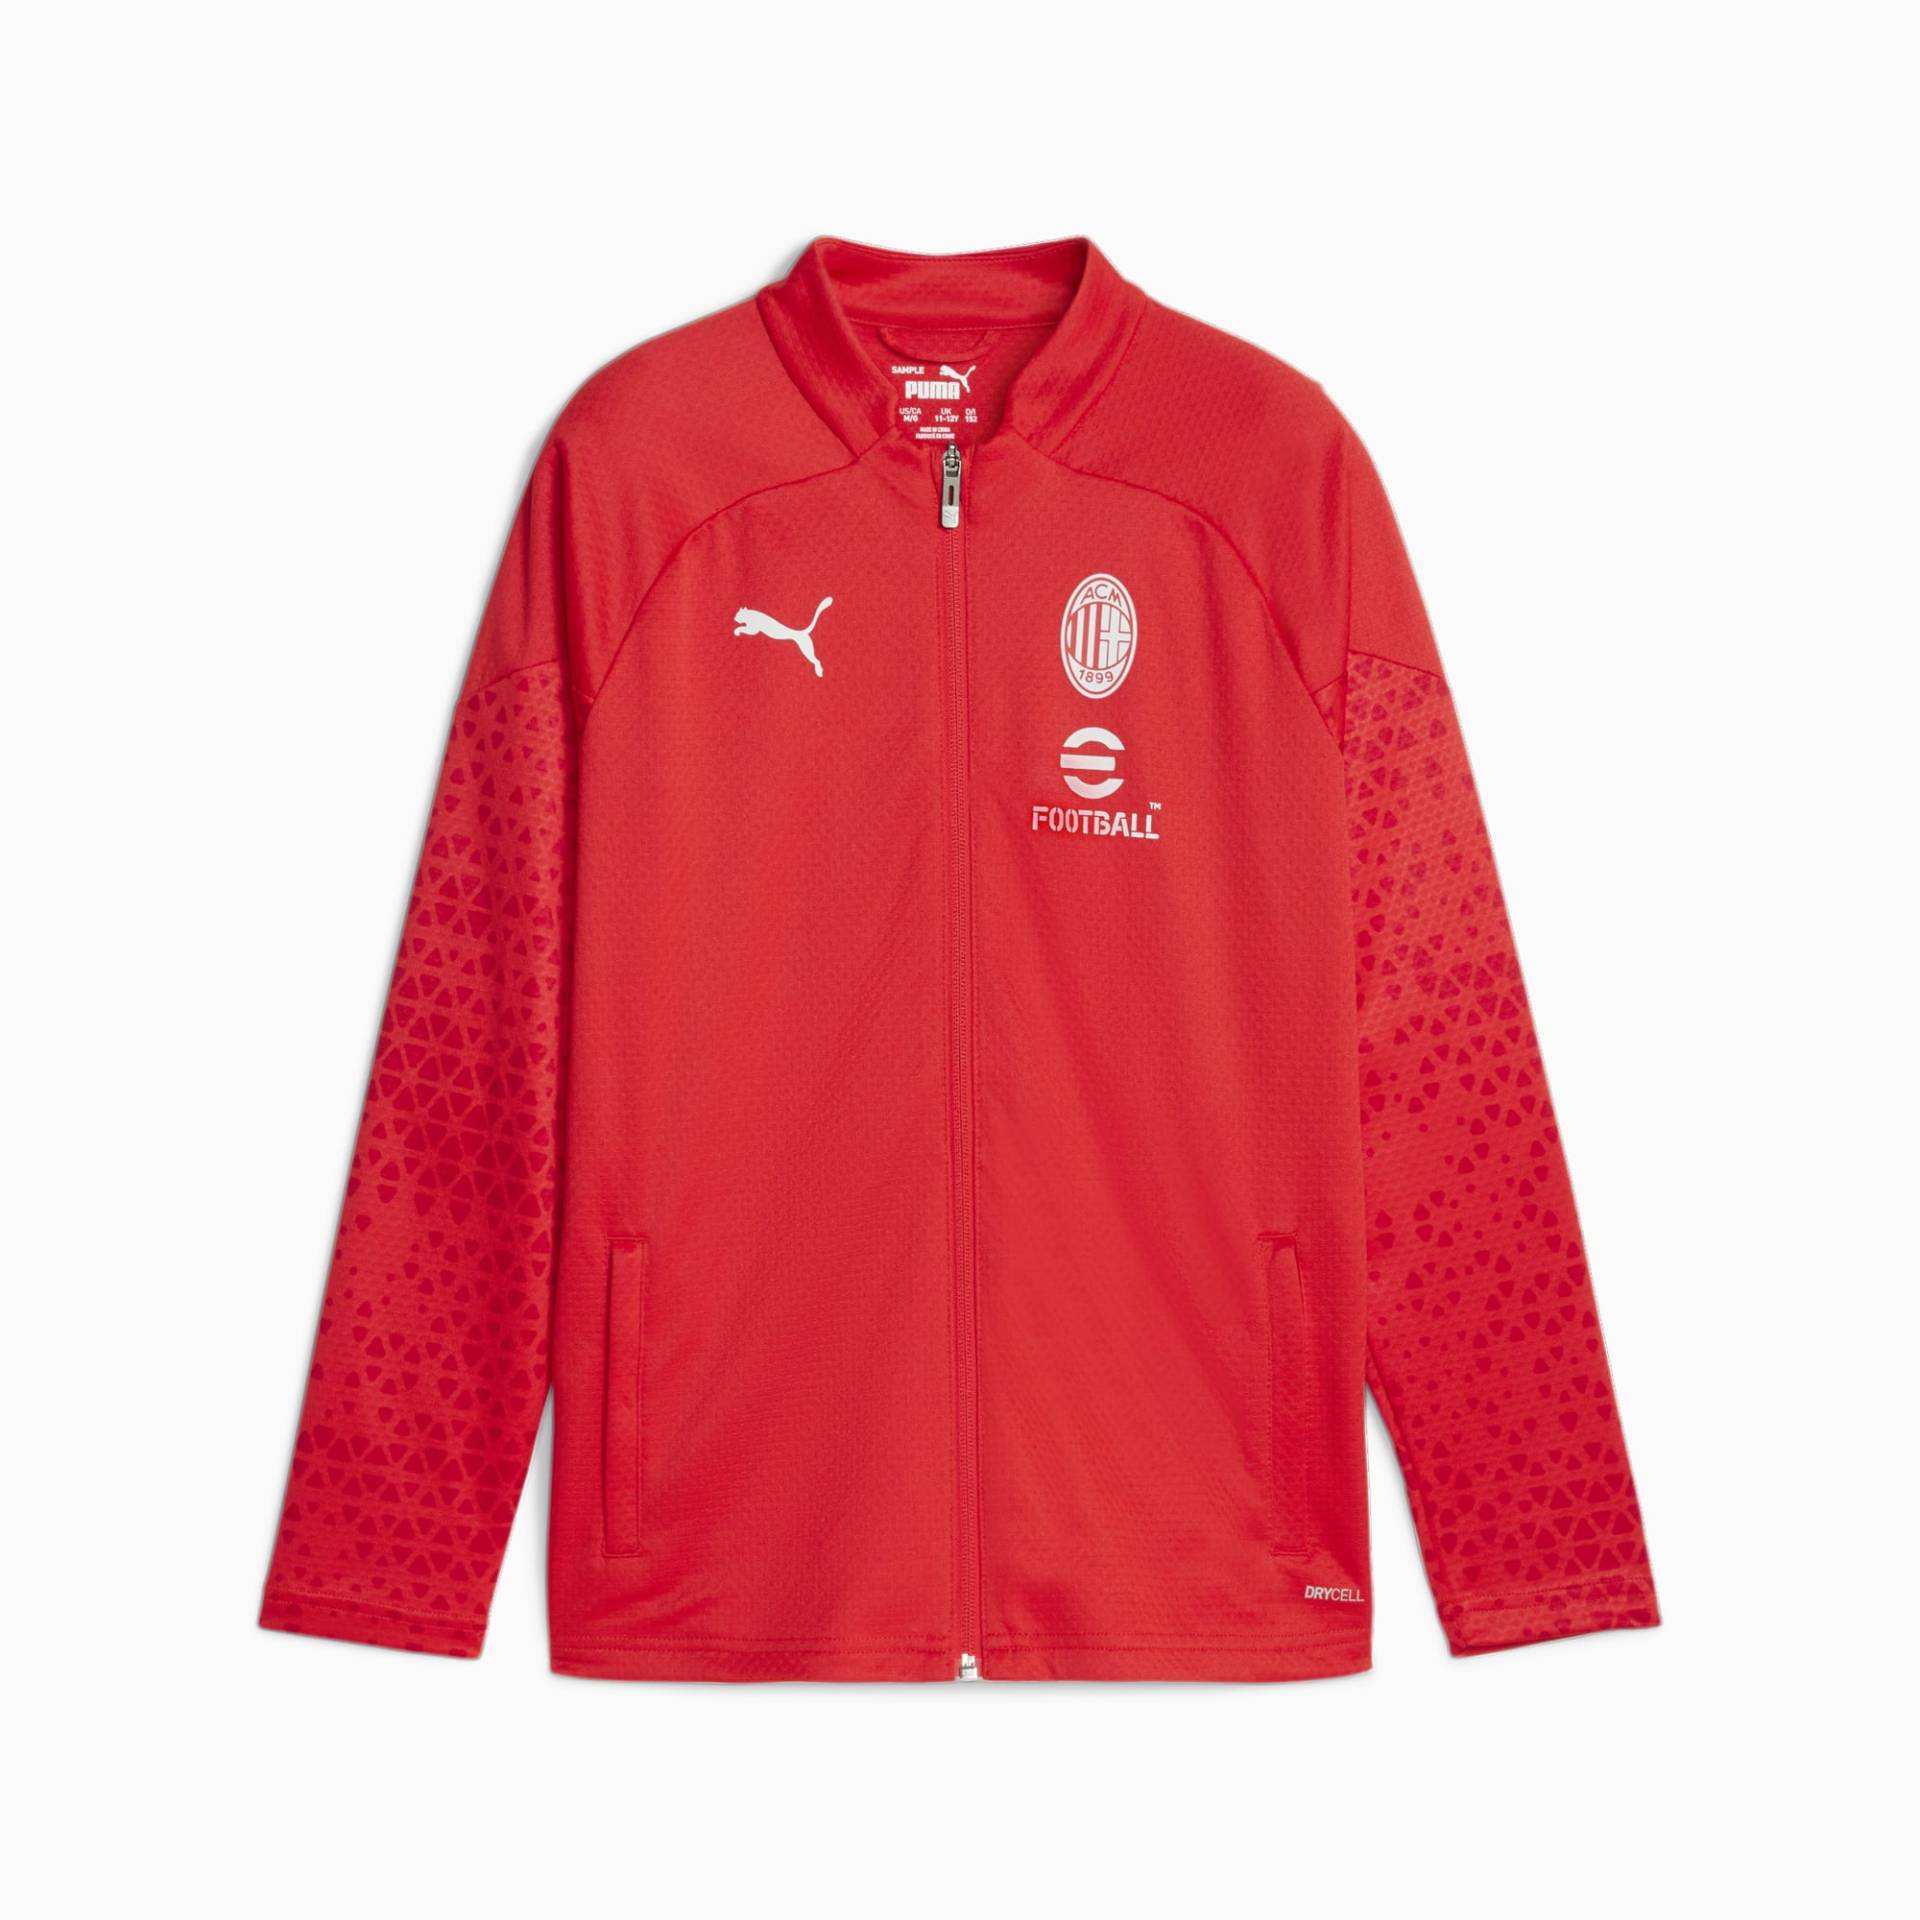 PUMA AC Milan Fußball-Trainingsjacke Teenager Für Kinder, Rot/Grau, Größe: 140, Accessoires von PUMA